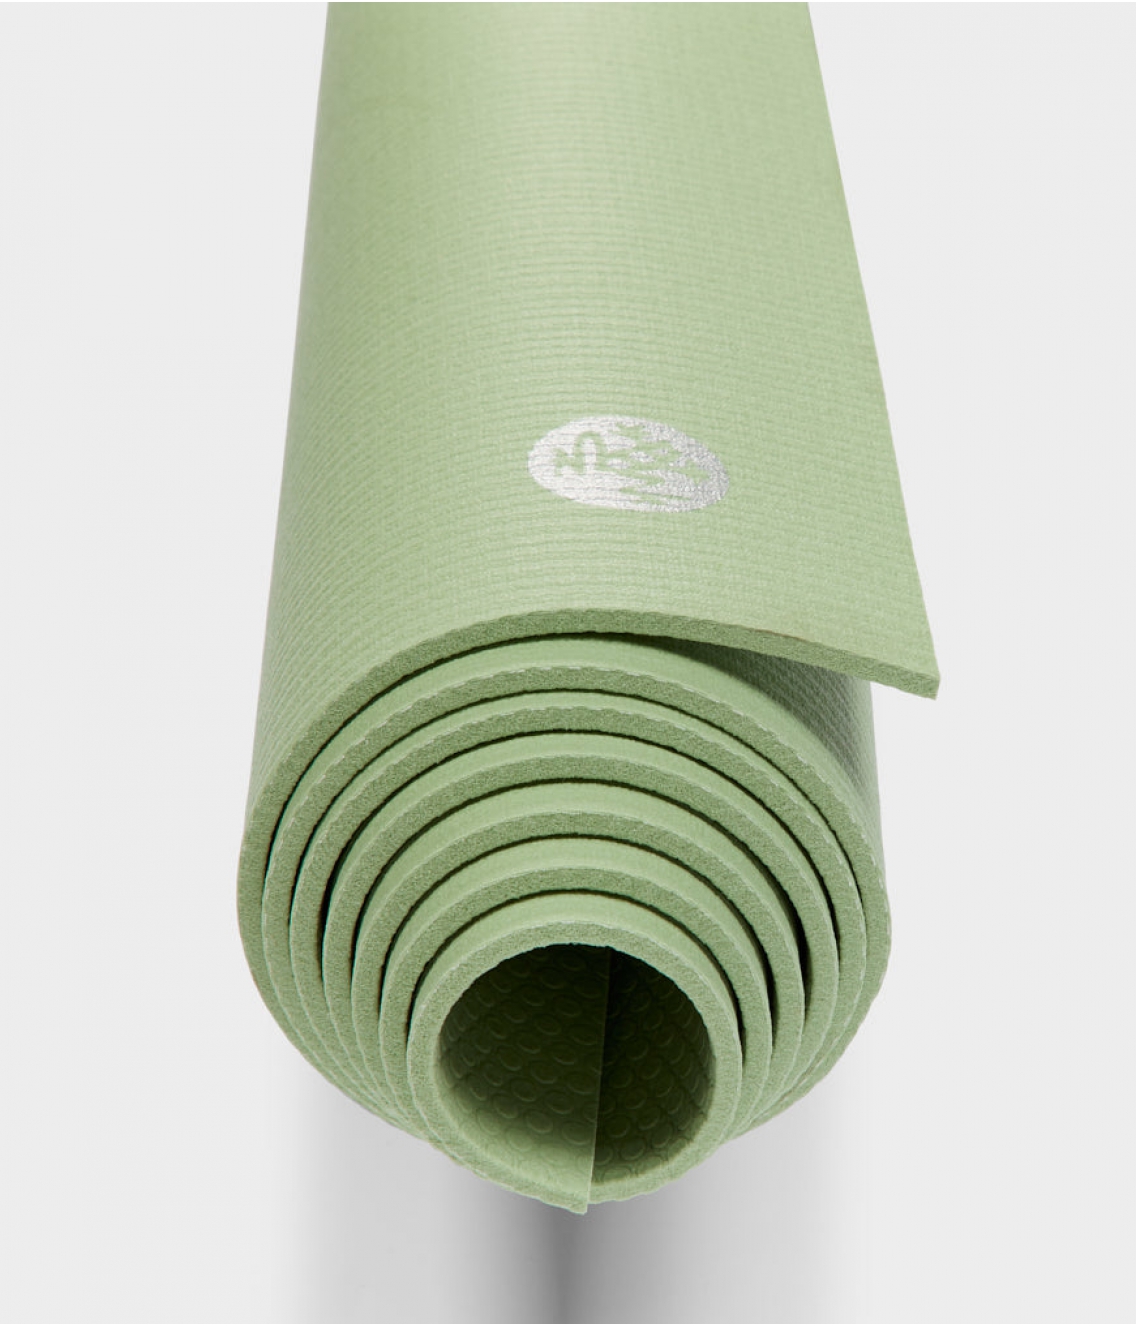 Профессиональный коврик для йоги из ПВХ Manduka PROlite 180*61*0,47 см - Celadon Green